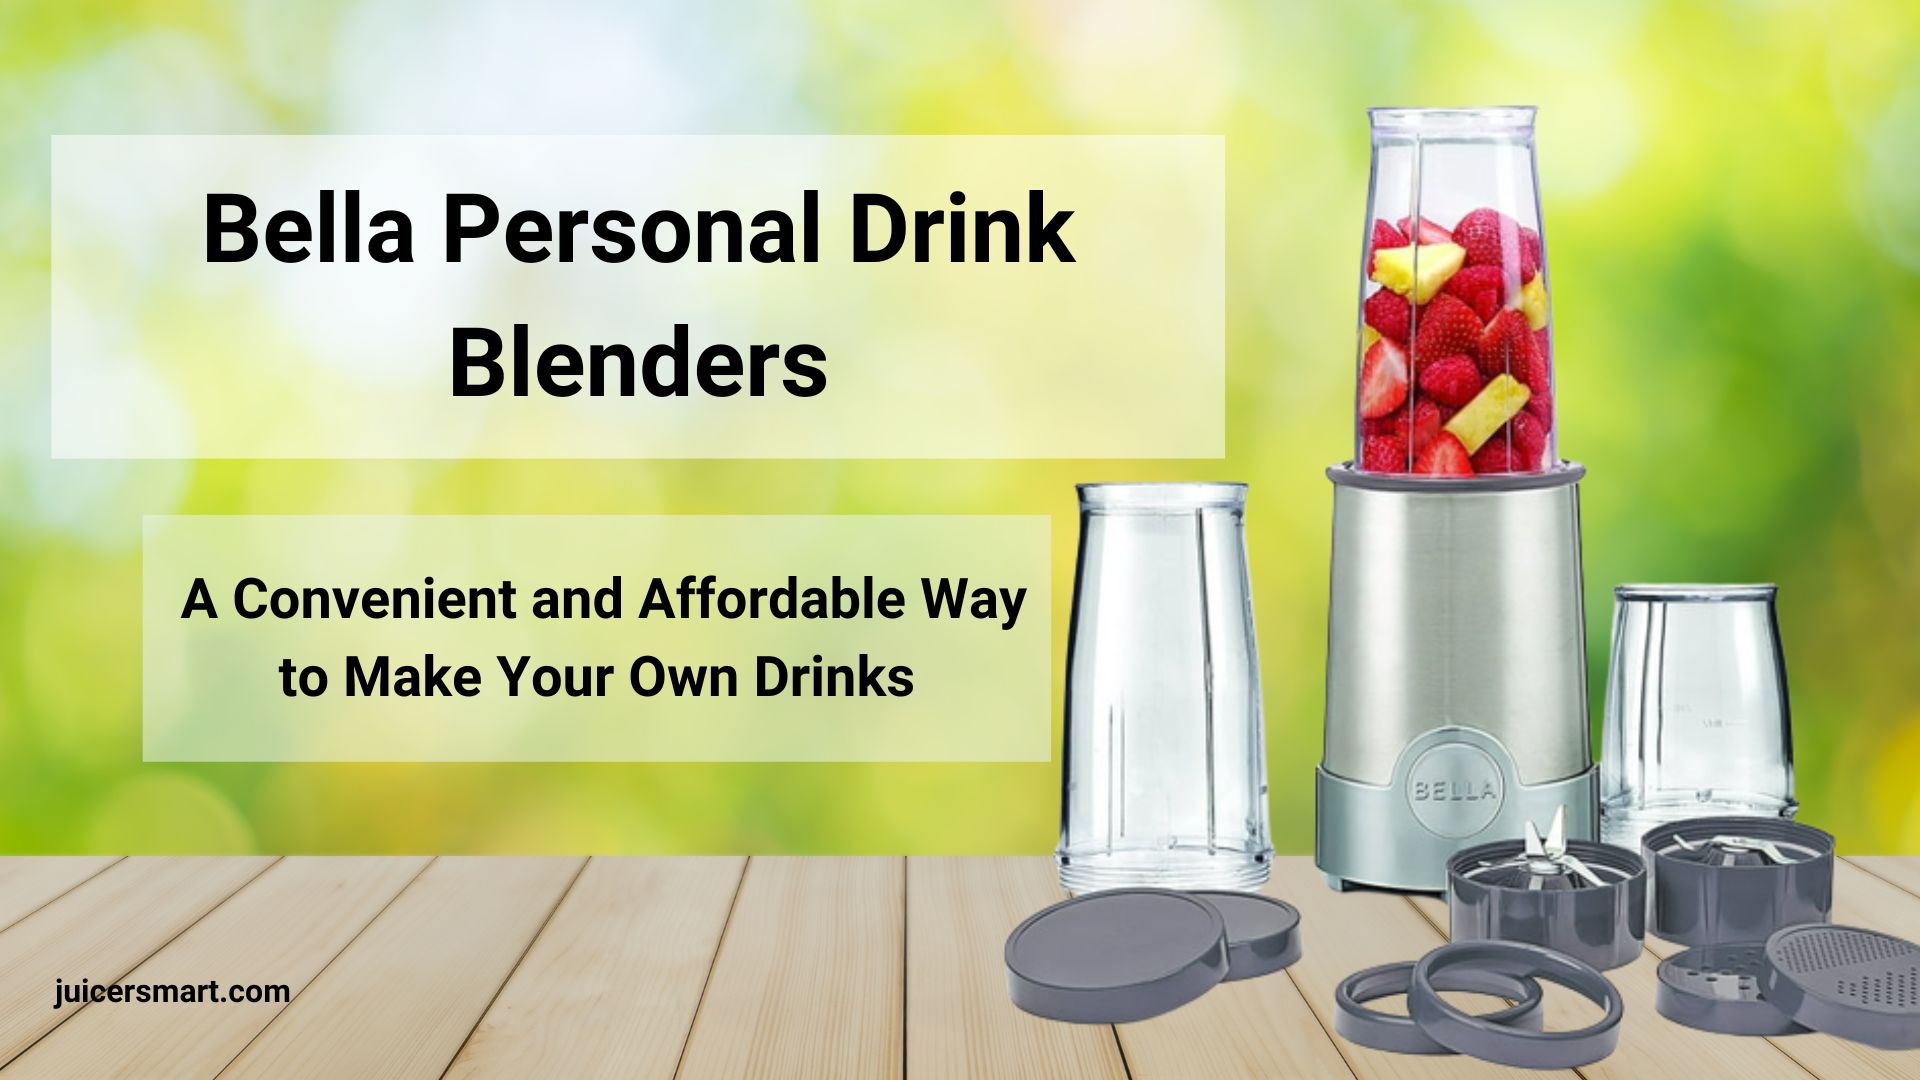 Bella Personal Drink Blenders